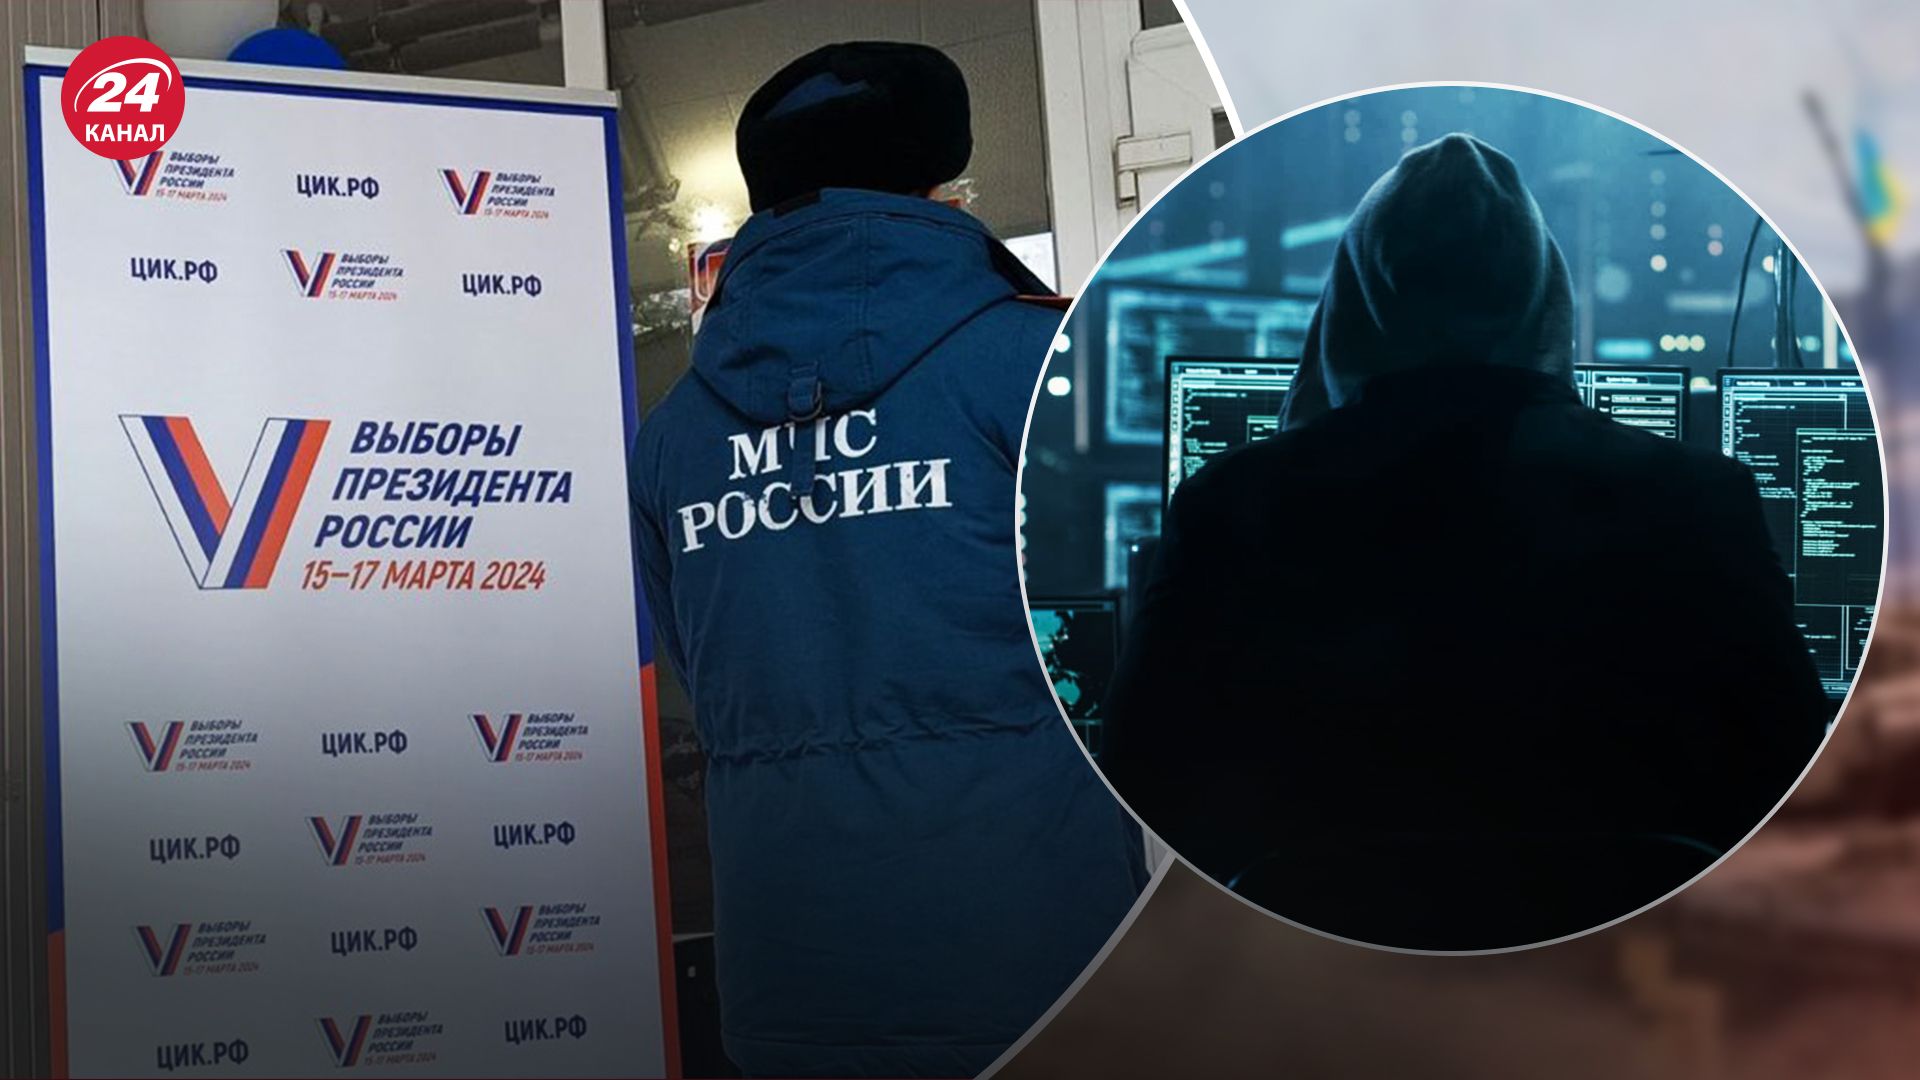 Киберспециалисты ГУР взломали систему госуслуг России, где проходили е-голосования на выборах